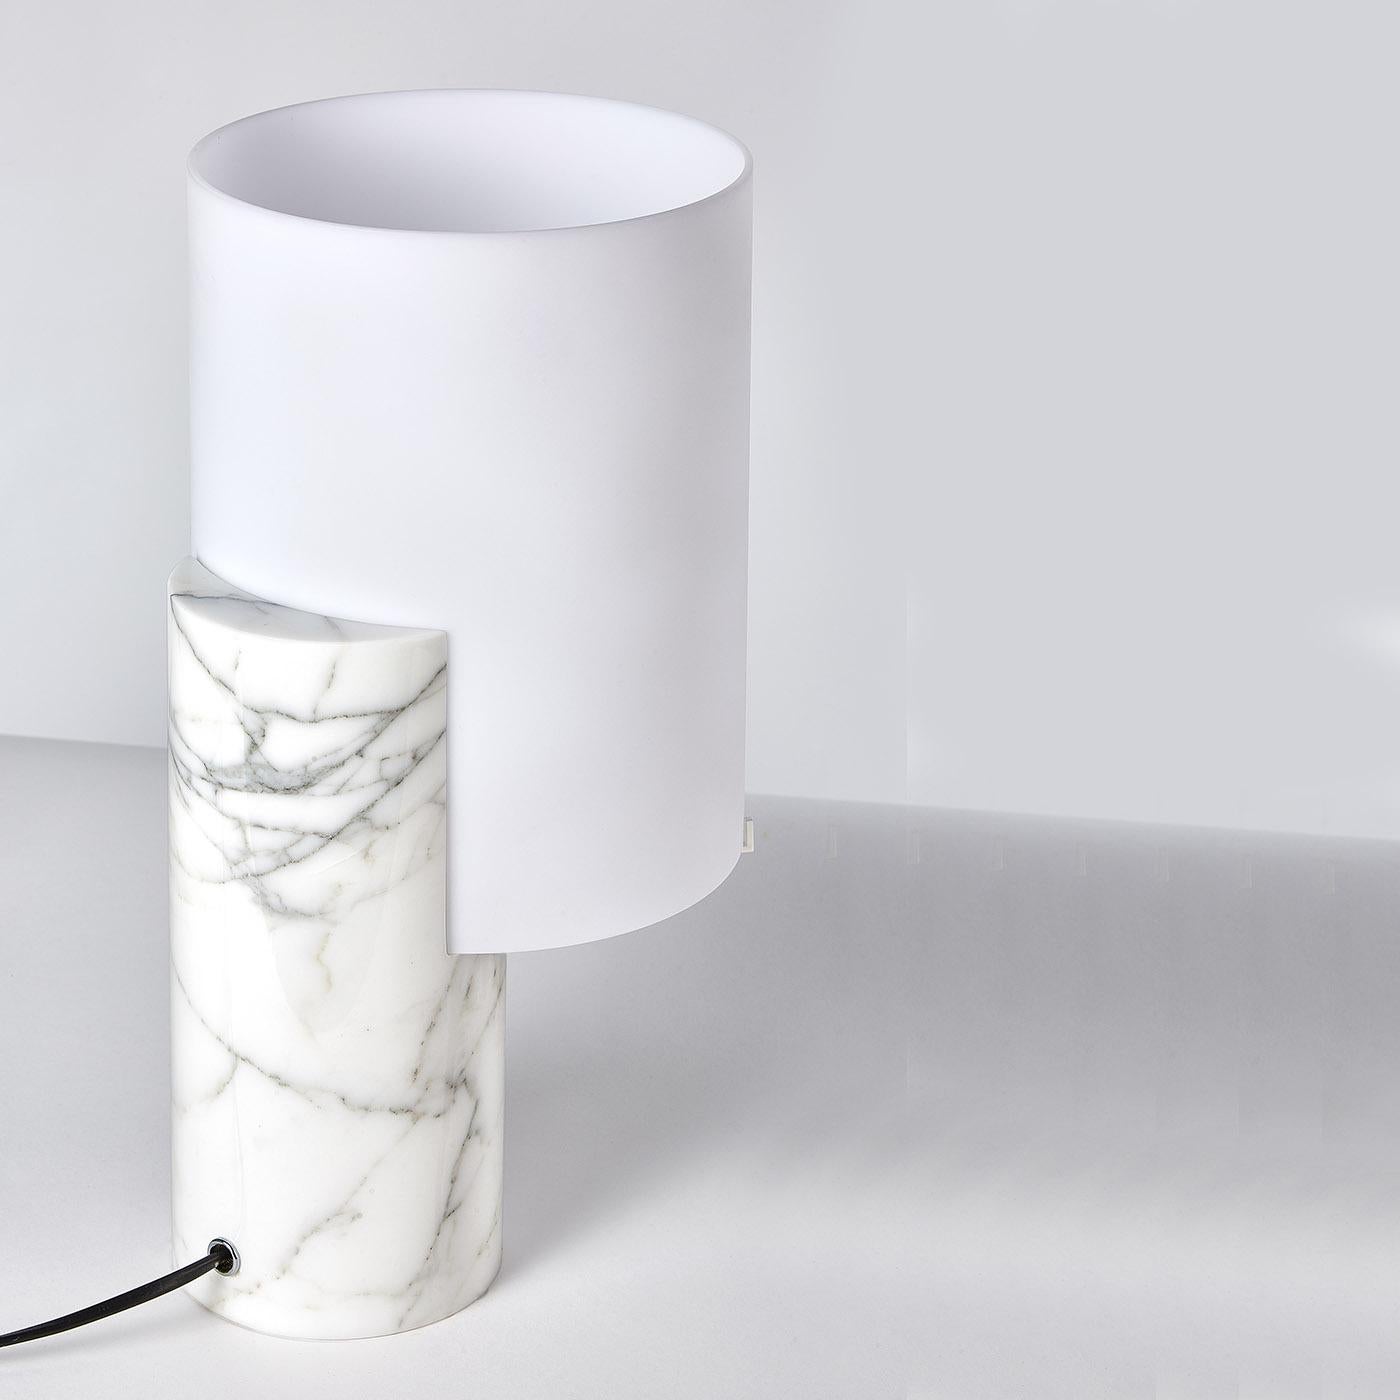 Témoignage d'élégance et de simplicité, cette superbe lampe de table est minutieusement fabriquée à la main à partir de matériaux de première qualité, dans des formes pures et épurées. Monté sur un corps en marbre blanc de Carrare, l'abat-jour blanc